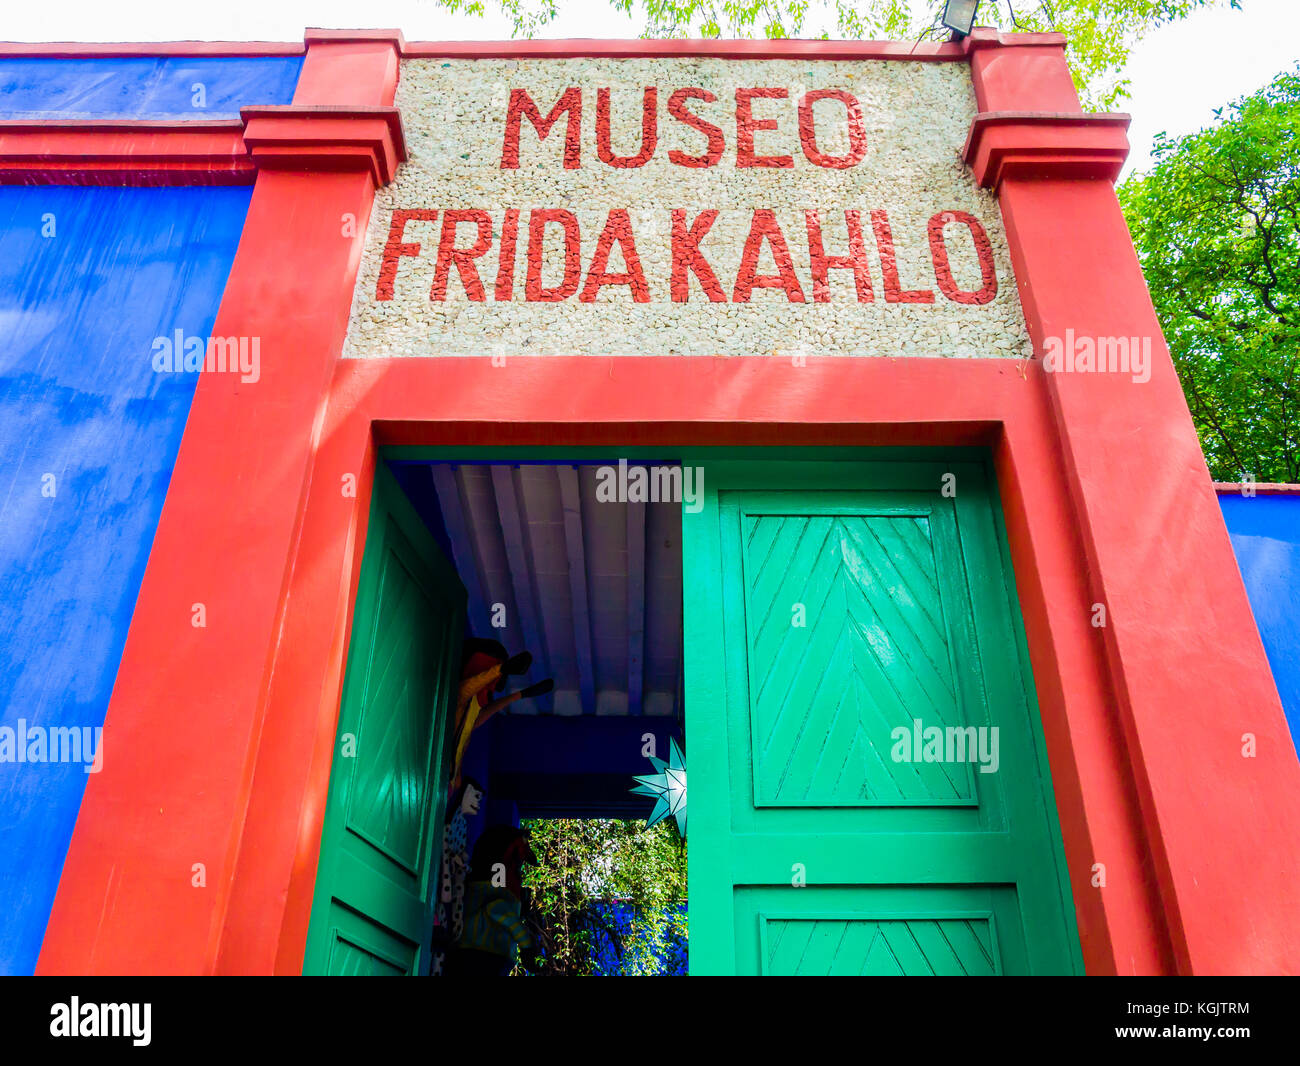 Entrance of Frida Kahlo Museum (also known as the Blue House - La Casa Azul), Coyoacán borough, Mexico City Stock Photo